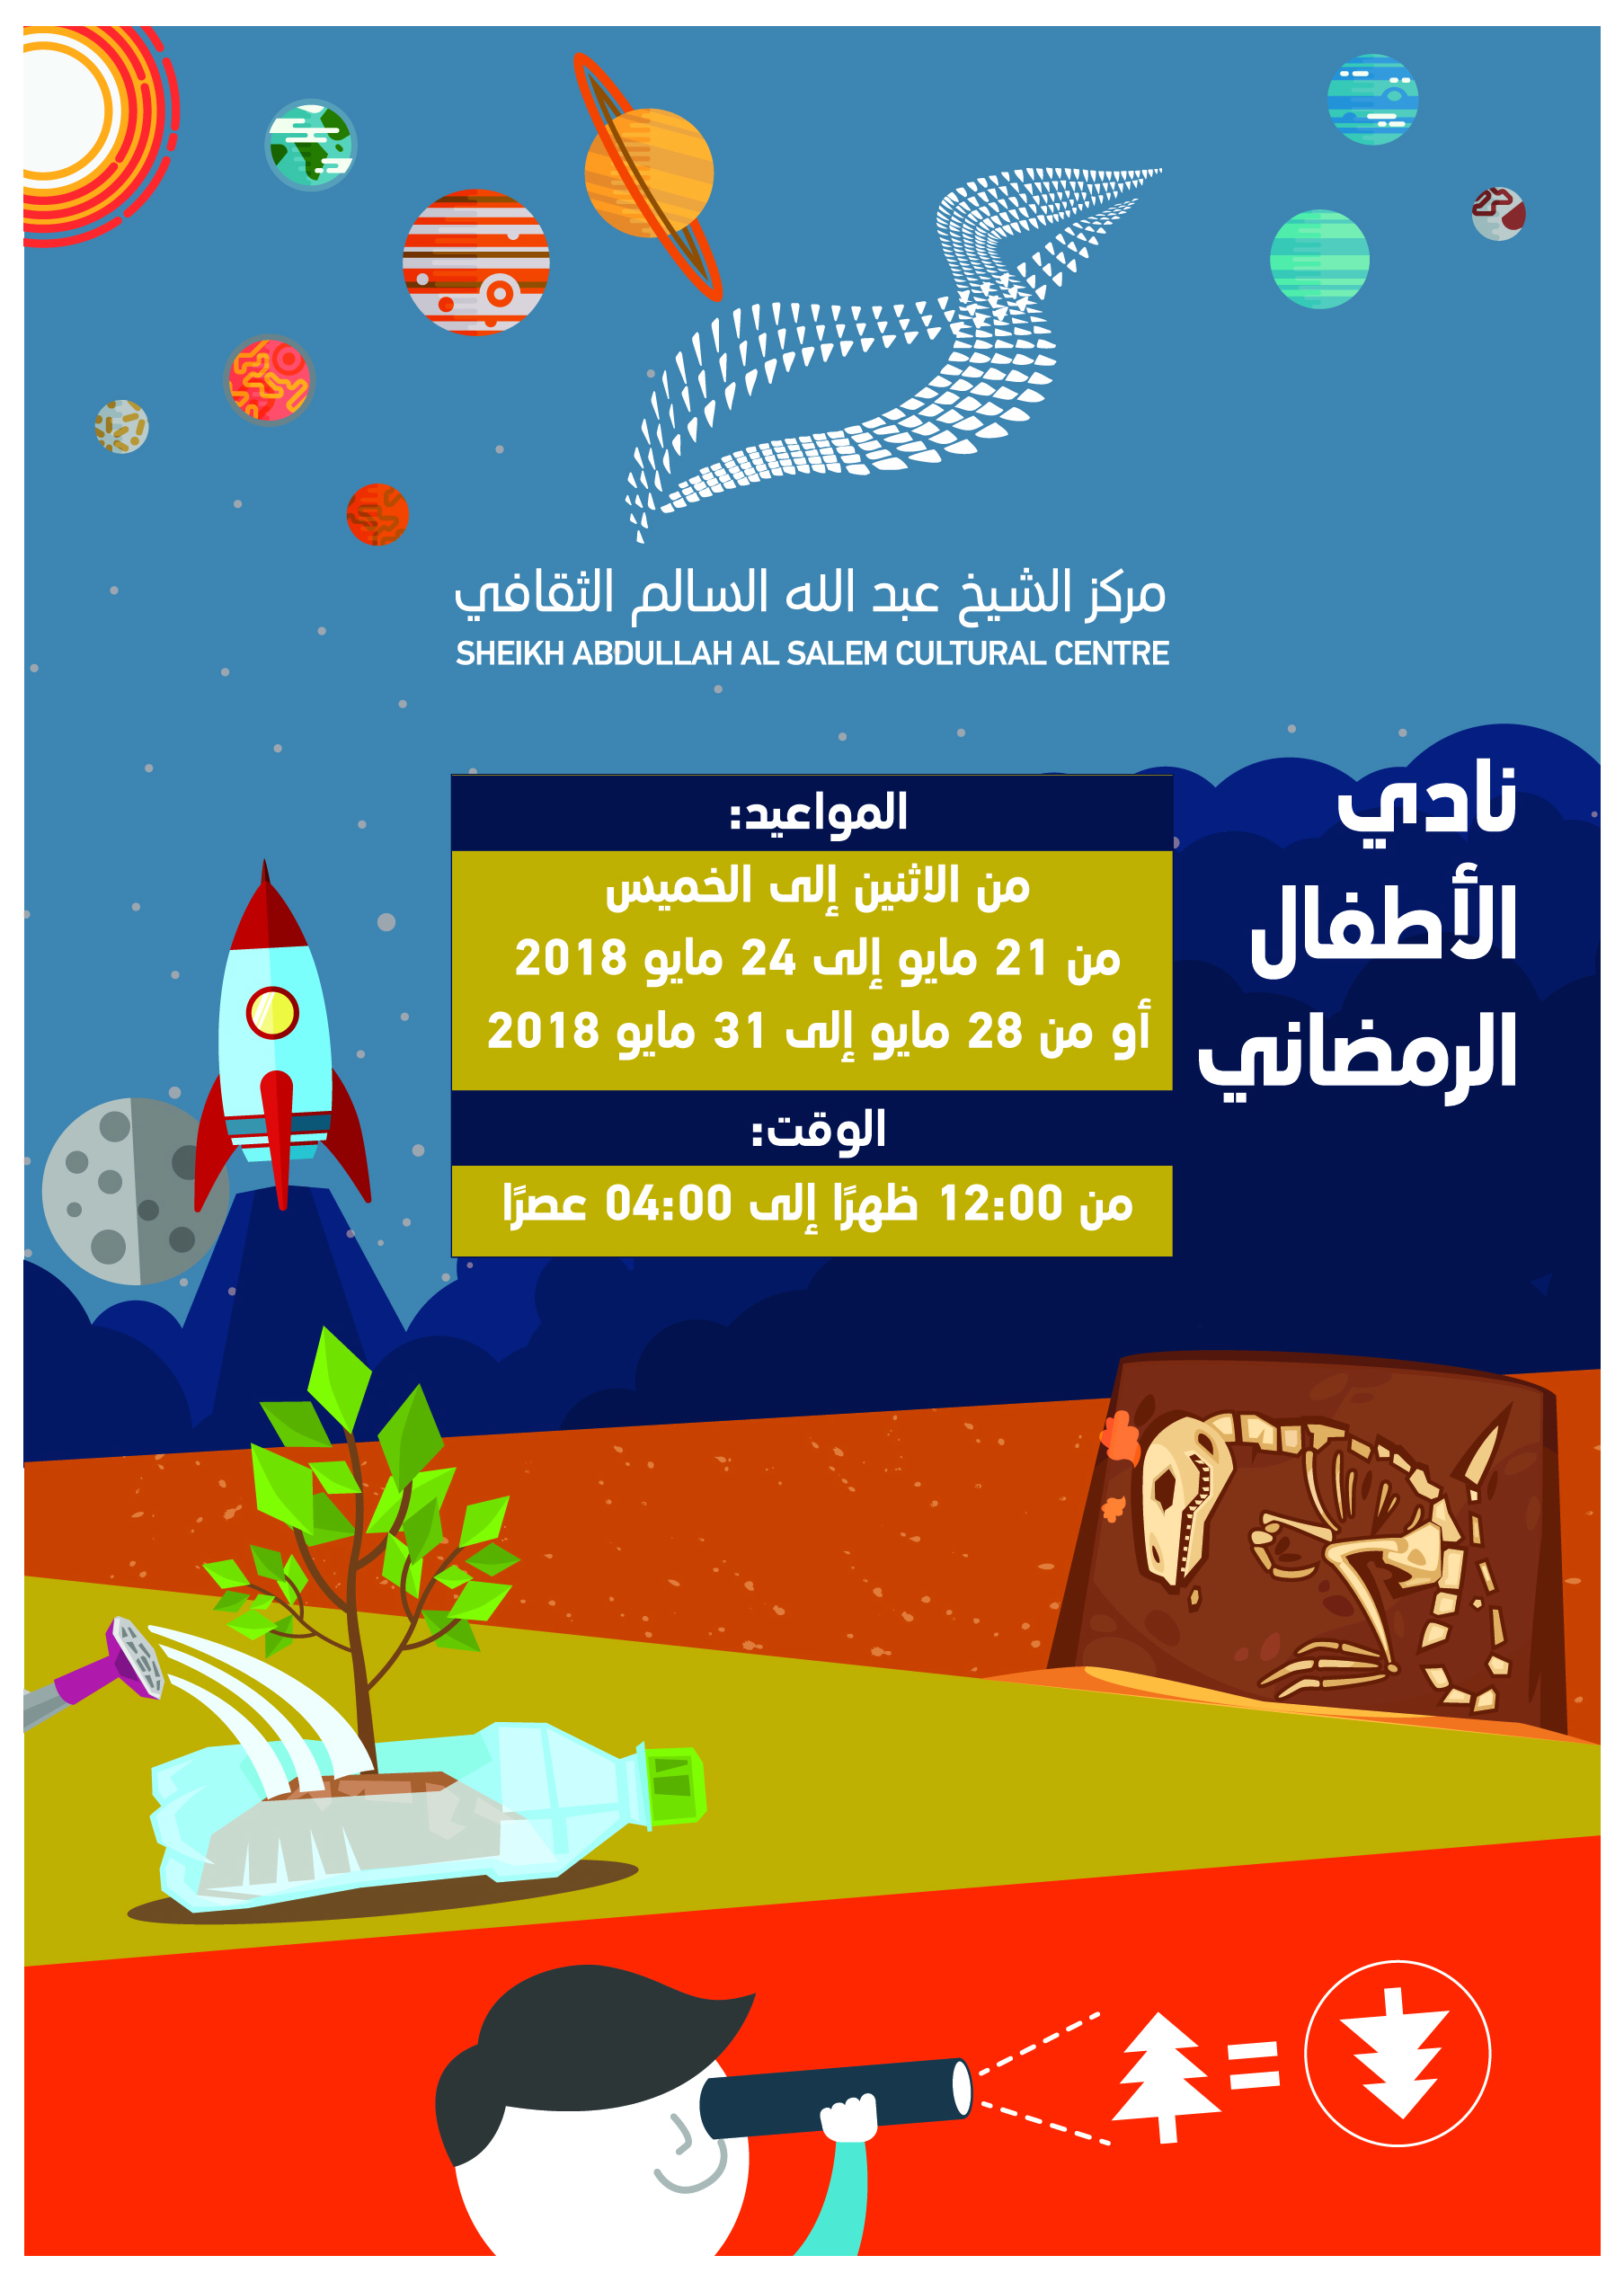 مركز (عبدالله السالم) الثقافي الكويتي ينظم برنامجا خاصا للأطفال في شهر رمضان